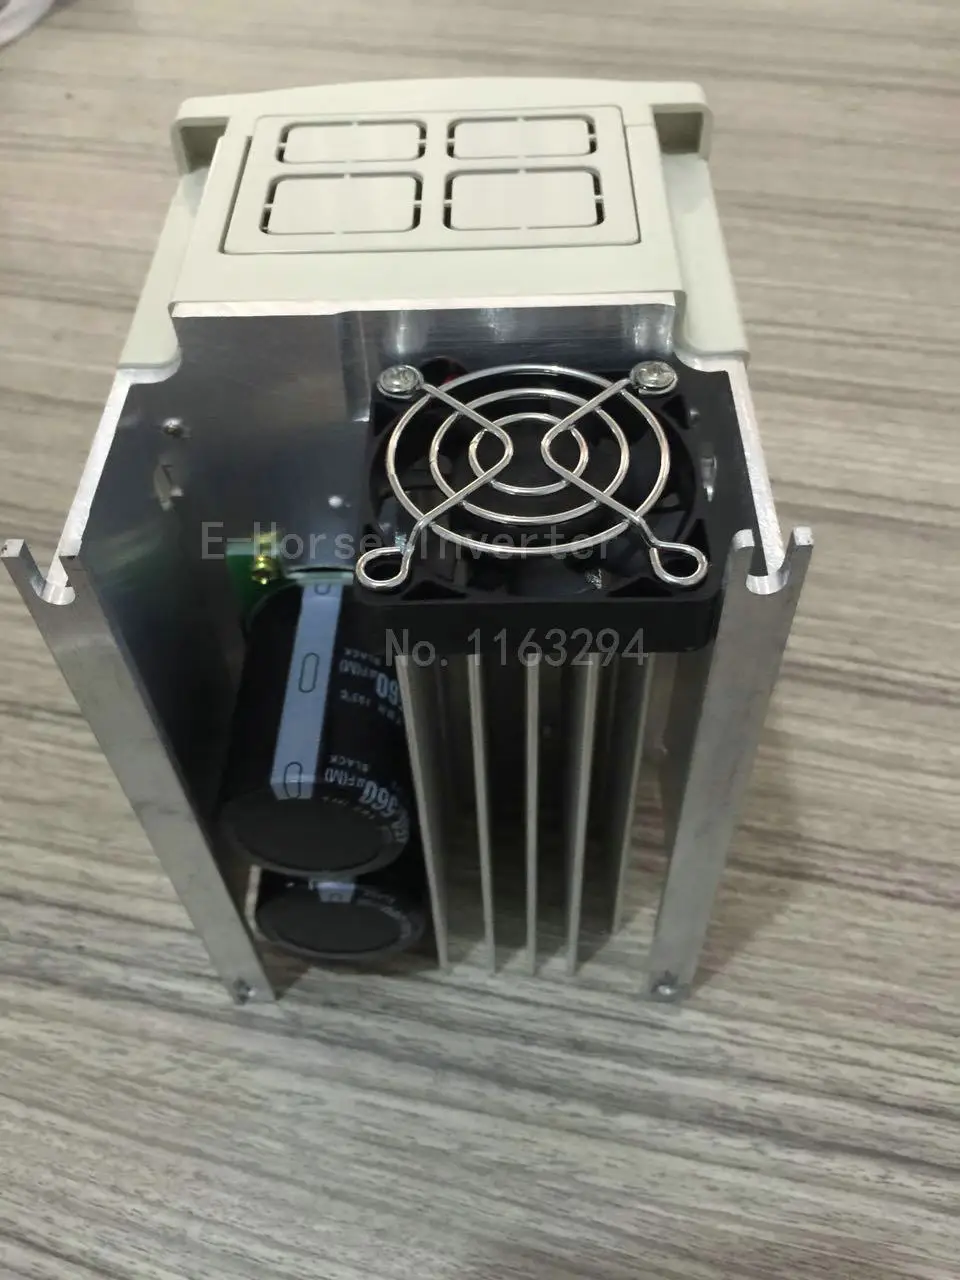 Частотный преобразователь vfd инвертор ЧПУ шпиндель мотора контроль скорости S2-2T 1.5KW преобразователь частоты 220V испытание удара wcj